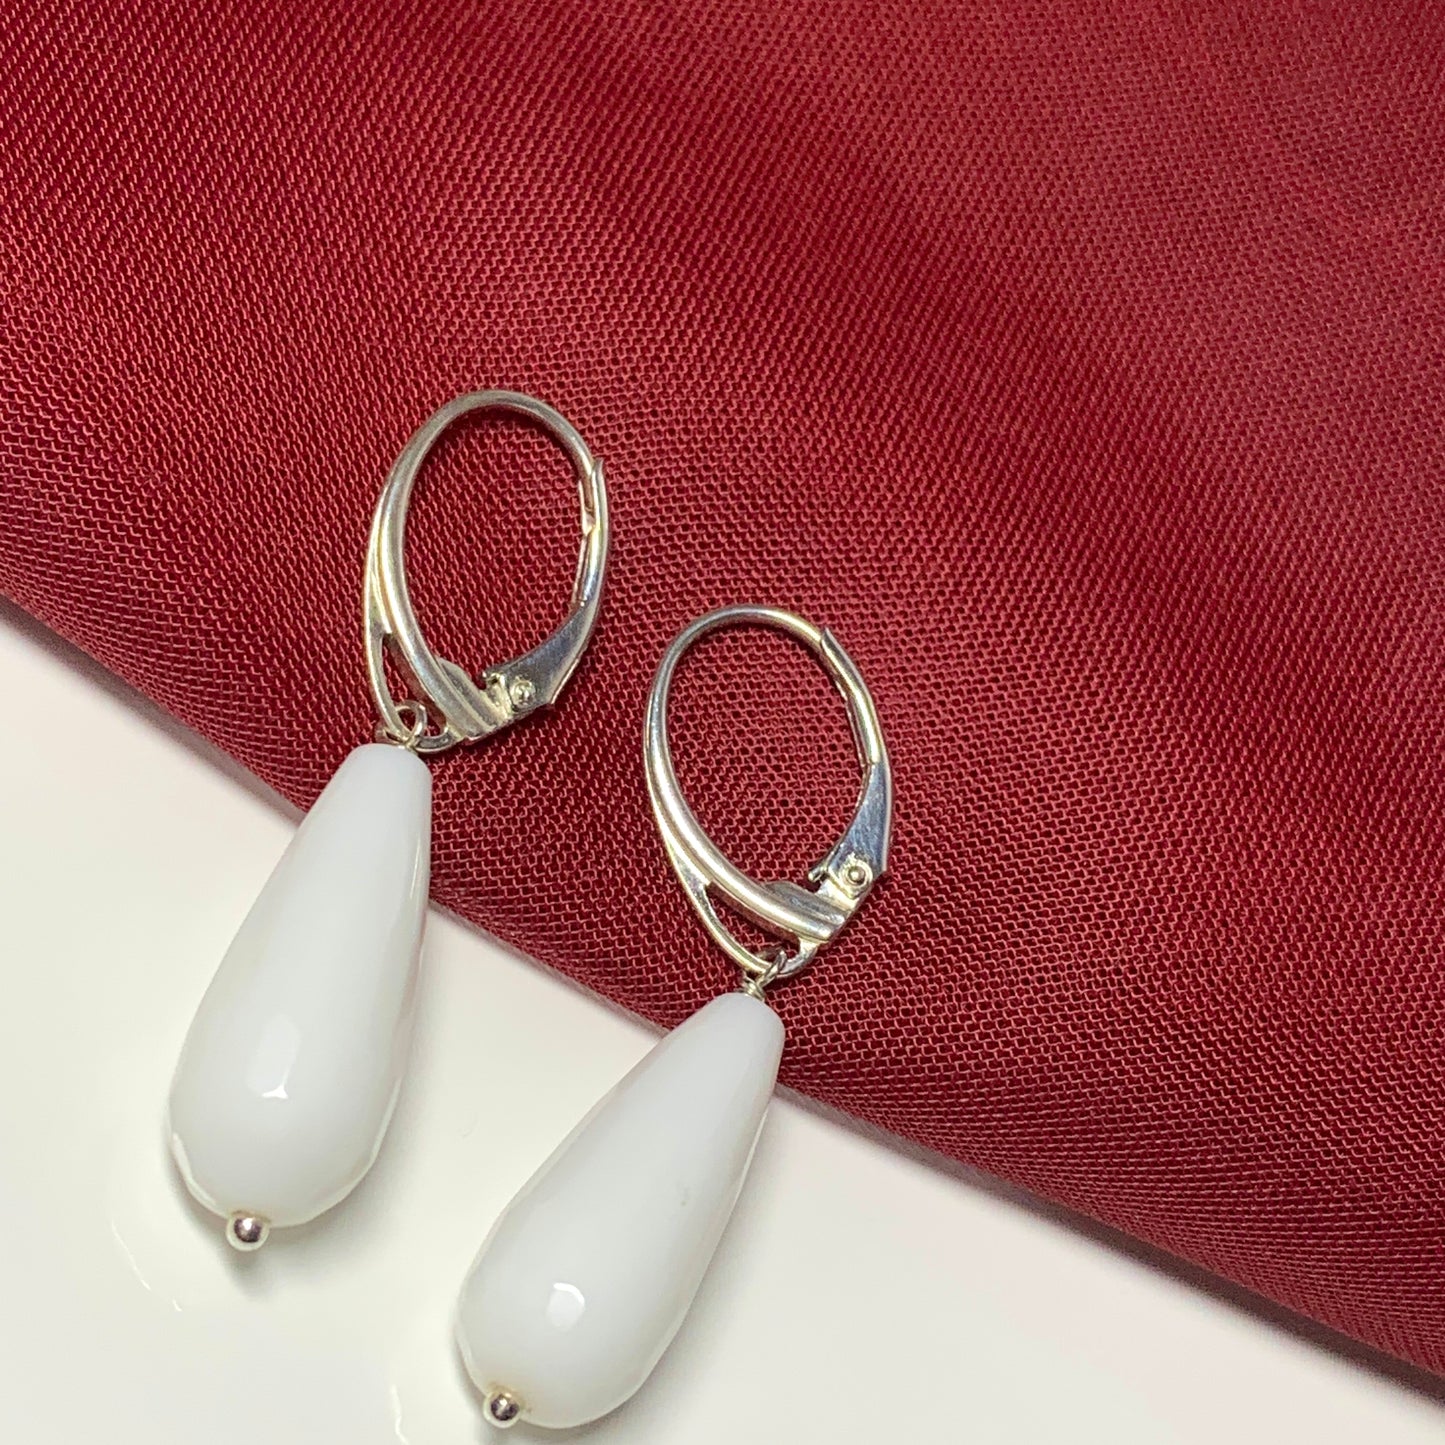 White teardrop shaped agate drop earrings